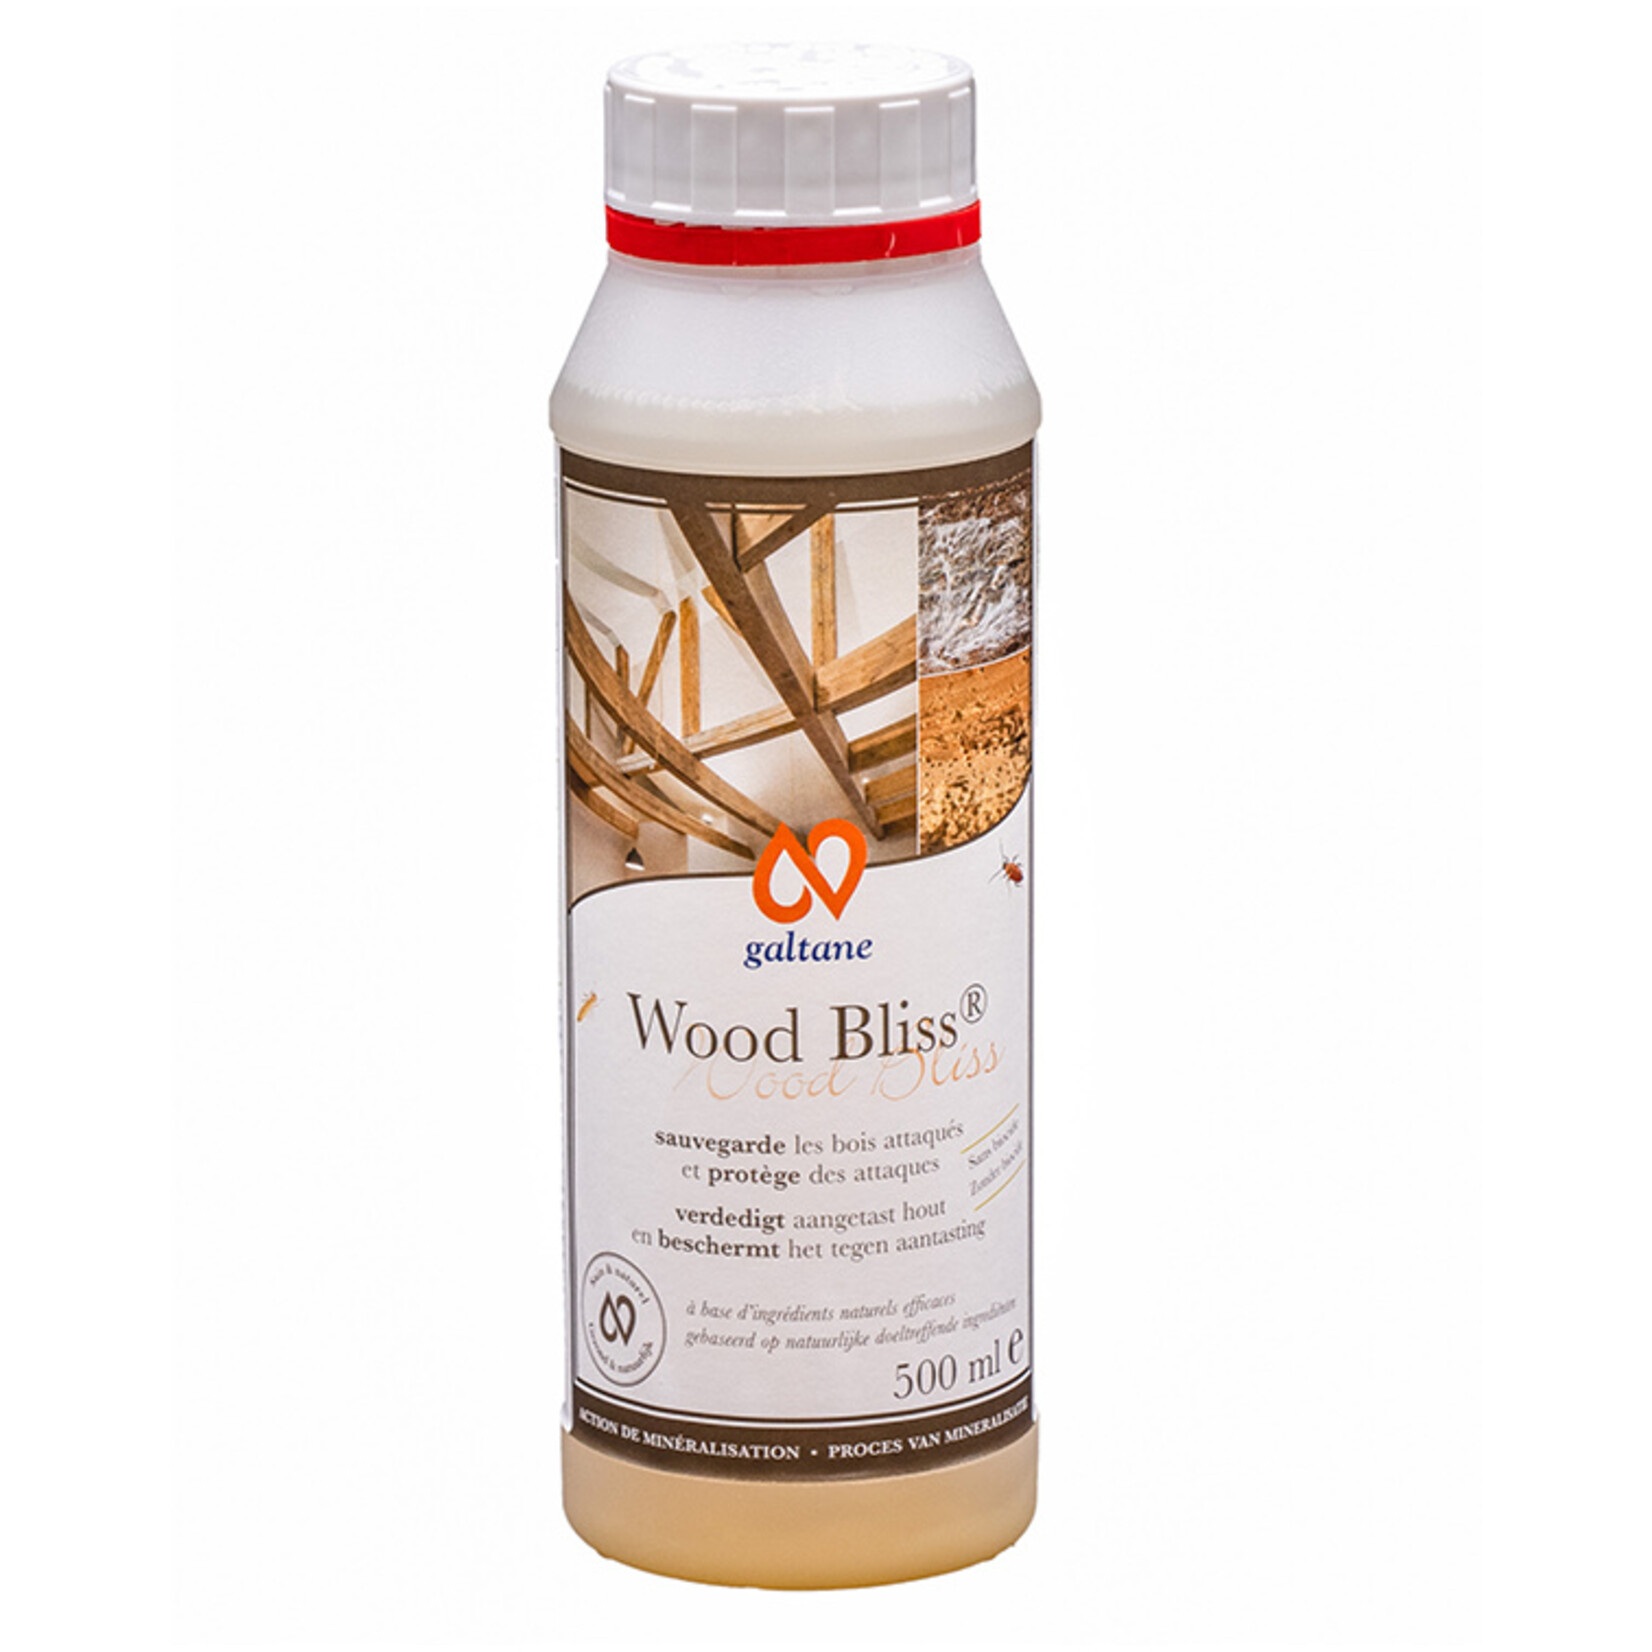 Galtane Wood Bliss houtbehandeling